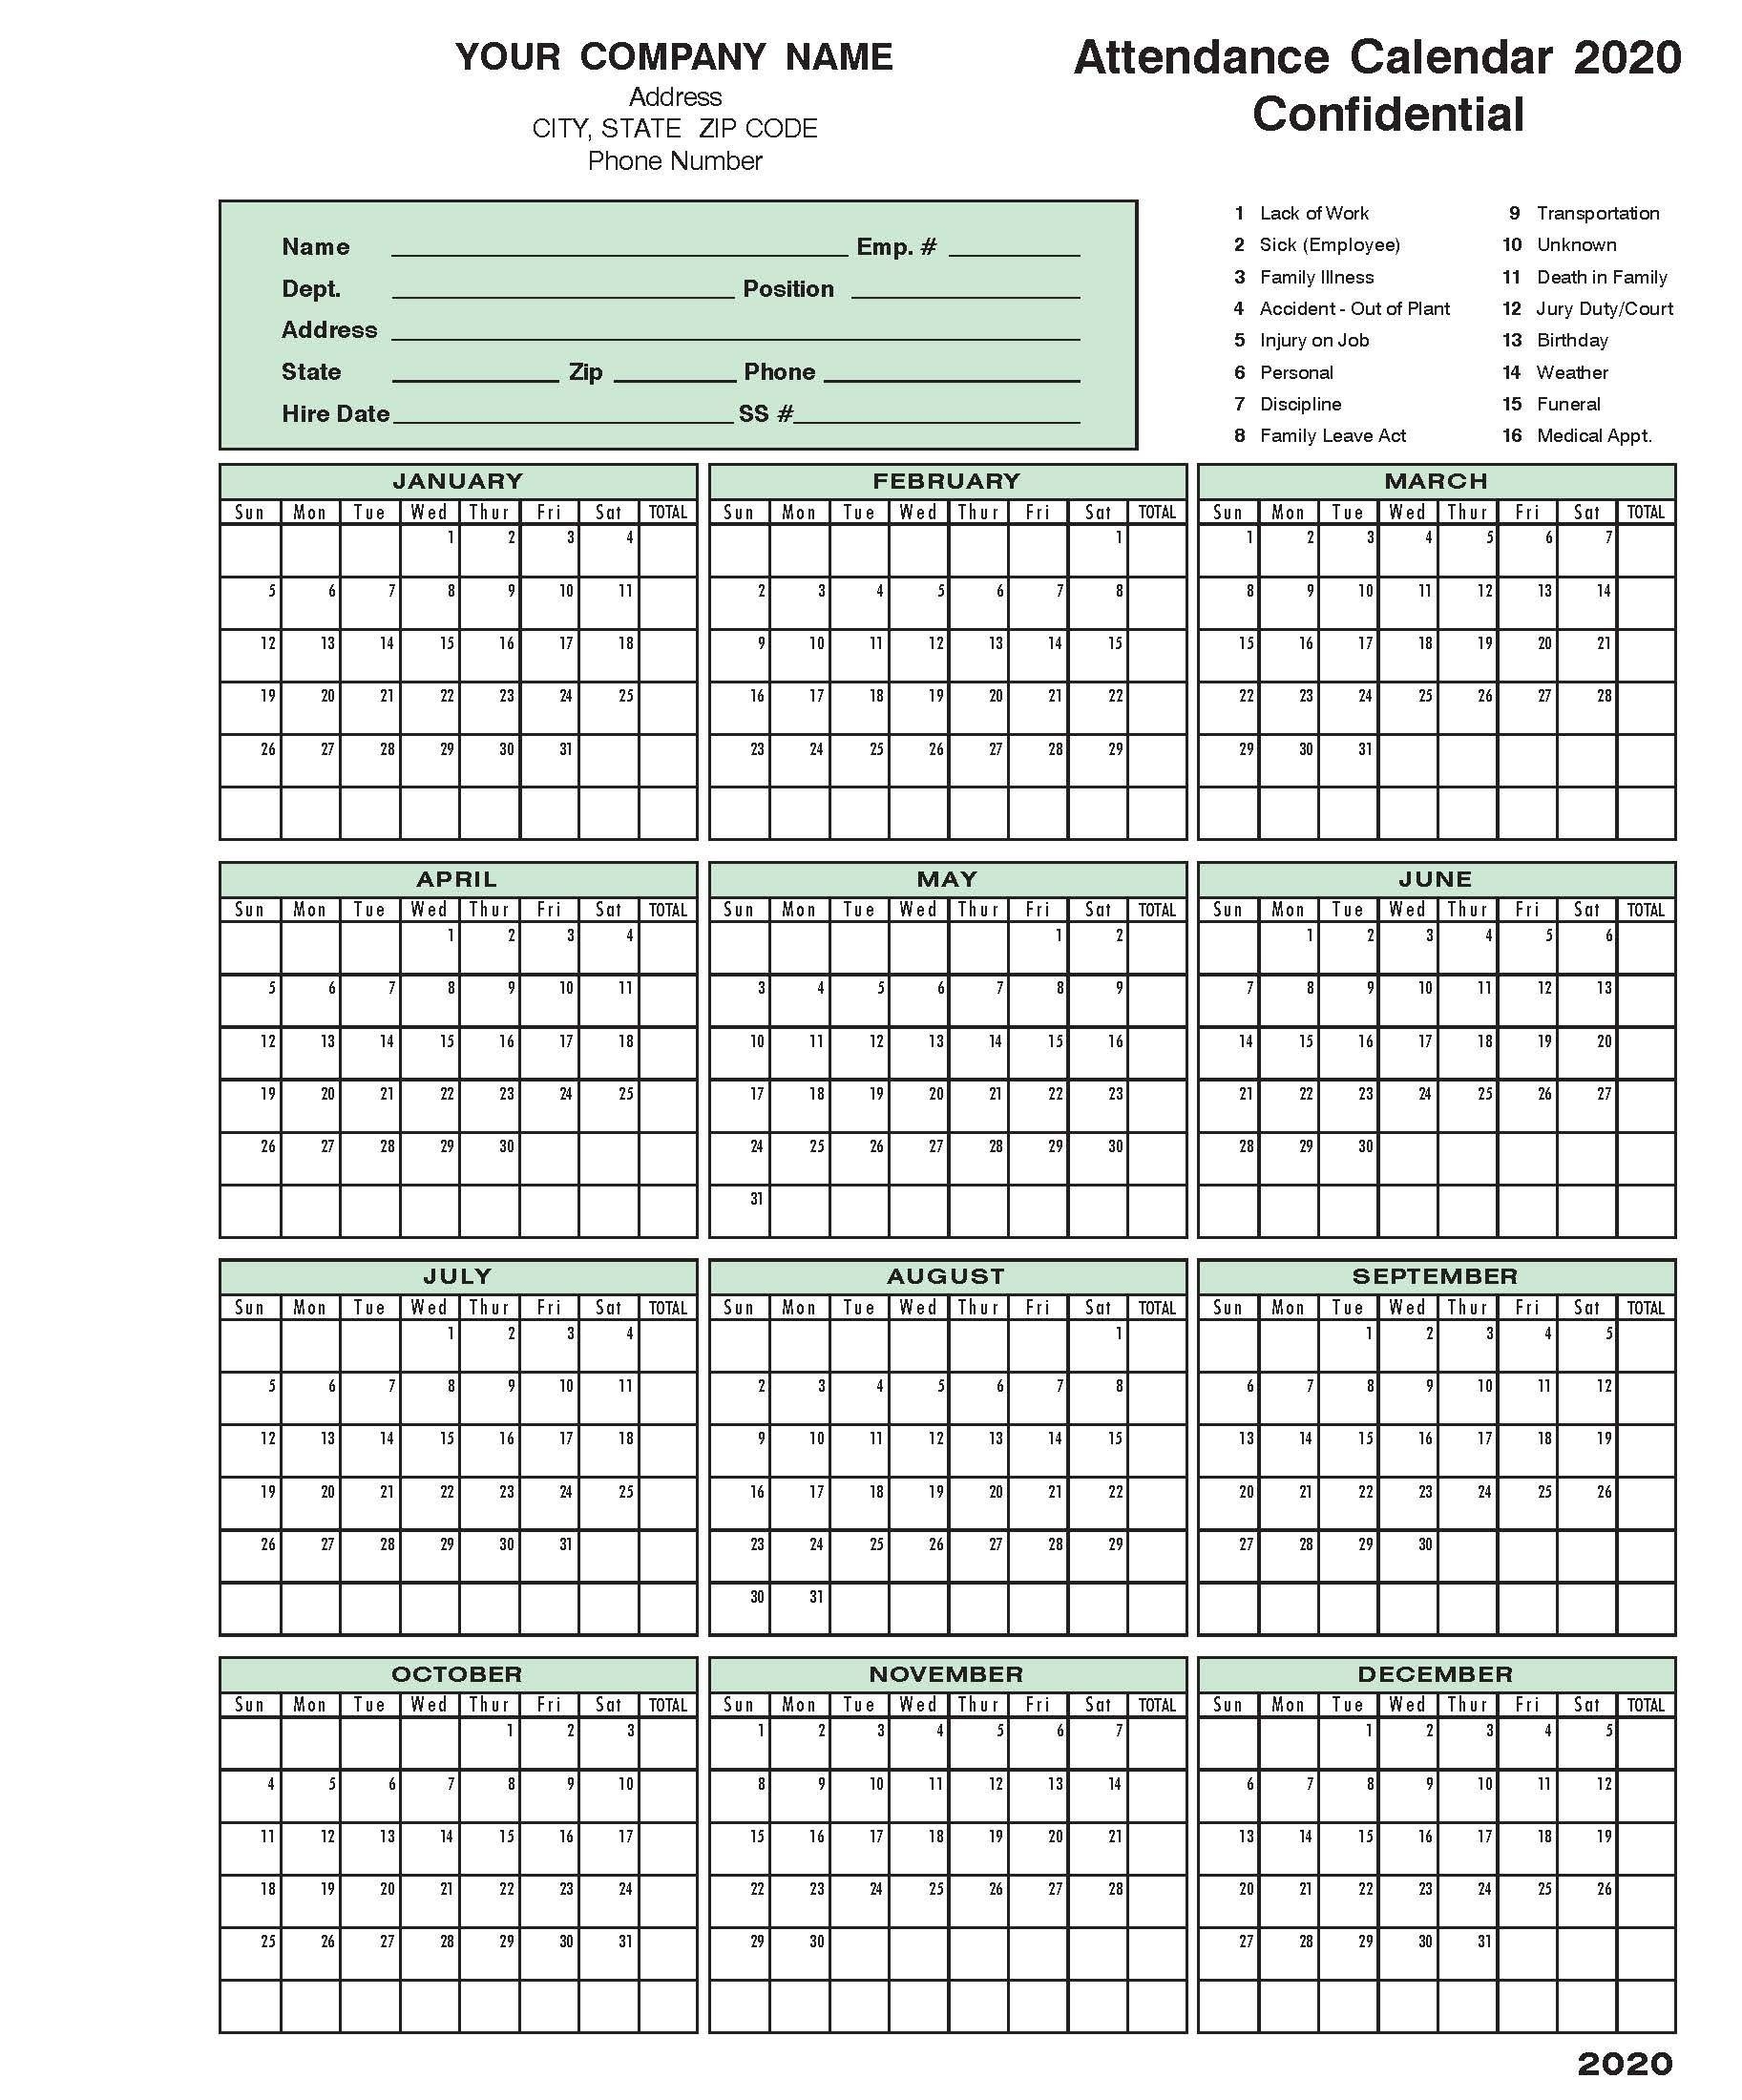 2020 Attendance Calendar In 2020 | Calendar Template  Printable Attendance Calendar 2021